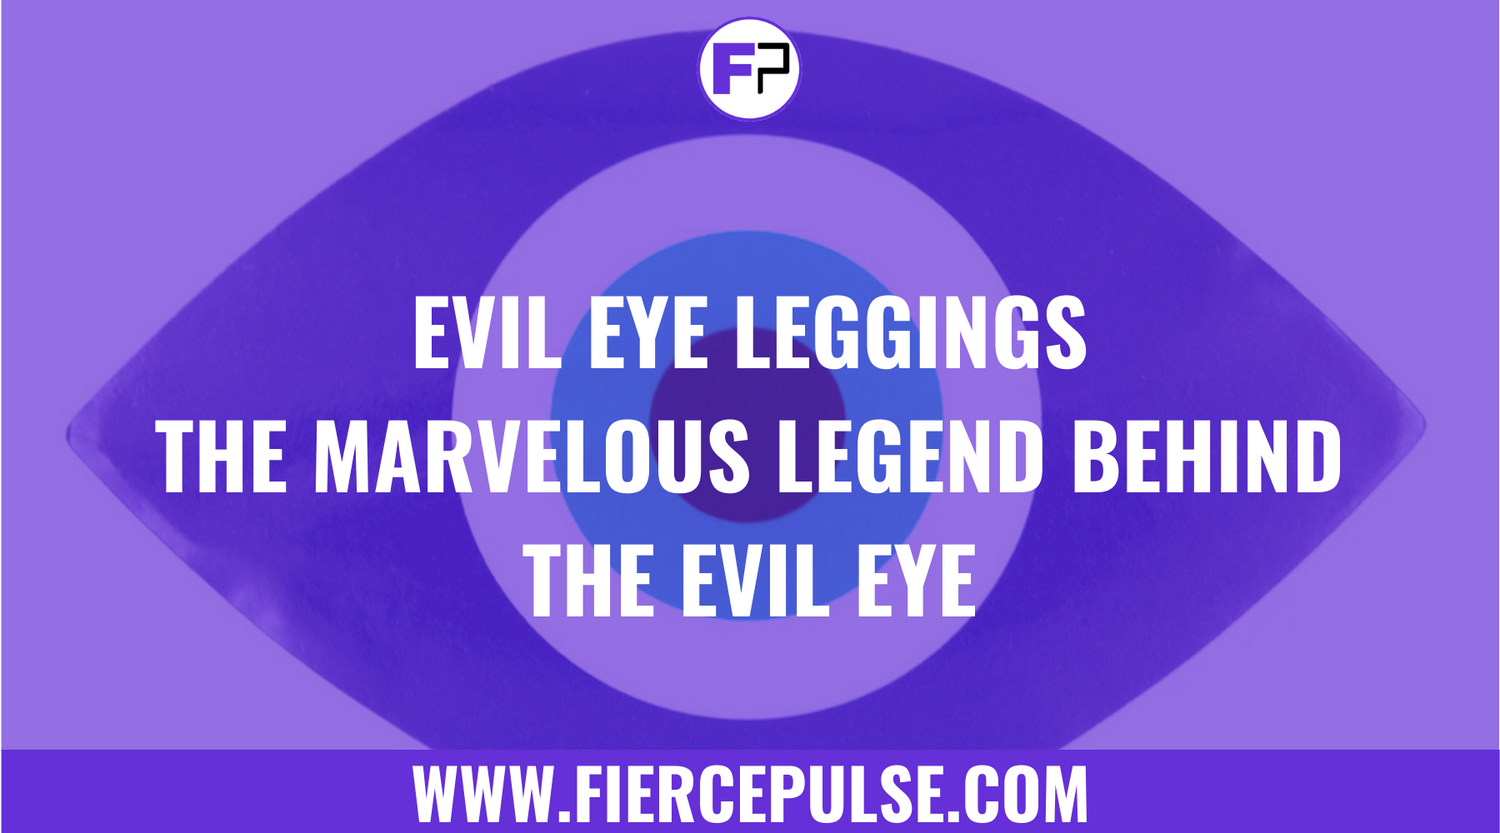 Evil Eye Leggings: The Marvelous Legend Behind the Evil Eye